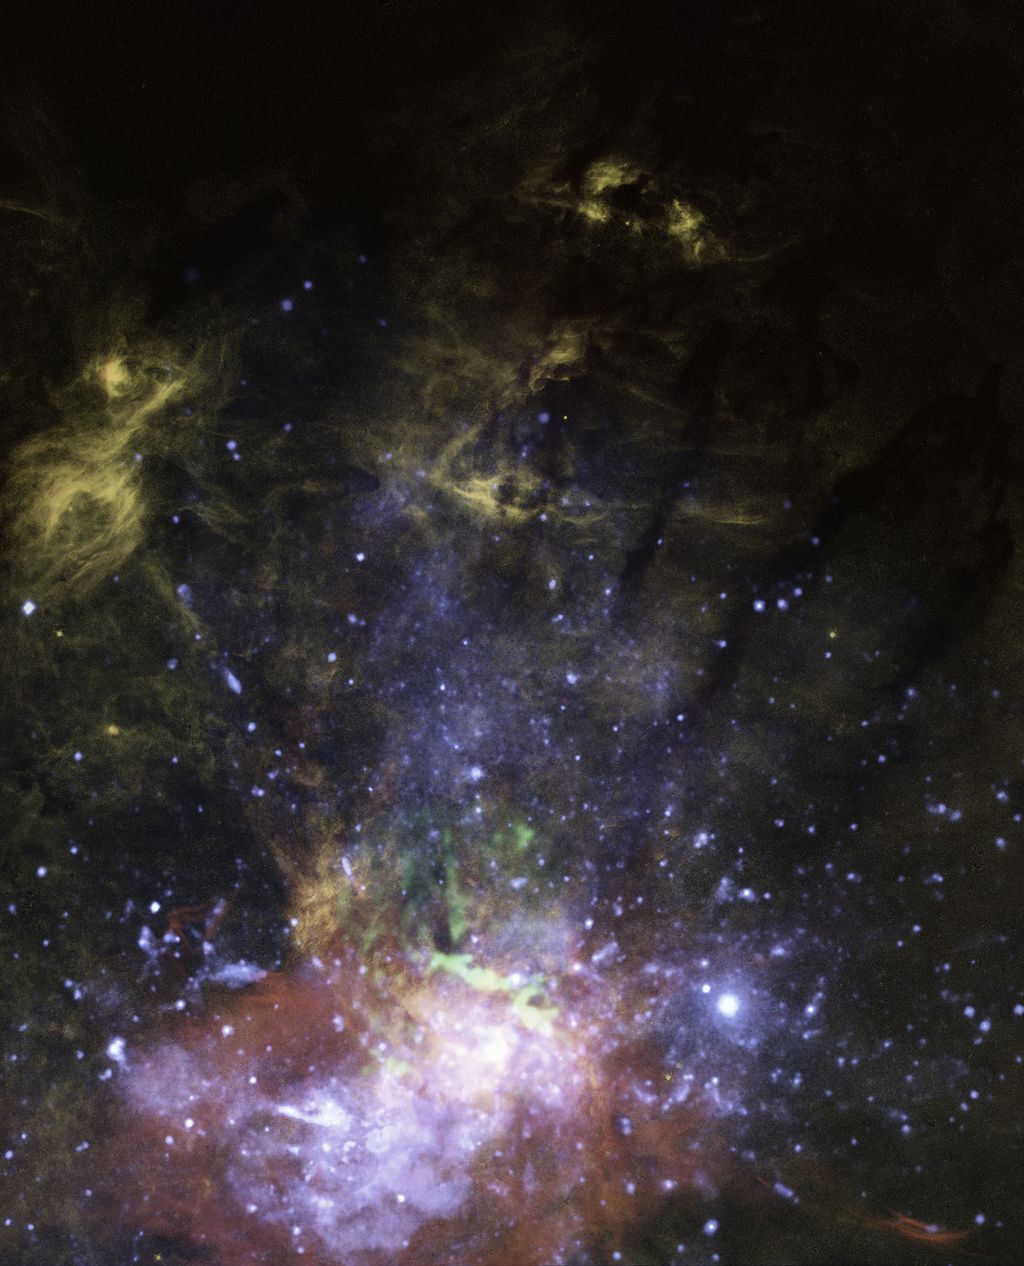 O buraco negro supermassivo Sgr A*, no ponto mais brilhante da formação cor-de-rosa, emite pequenos jatos que empurram as nuvens de gás (Imagem: Reprodução/NASA/ESA/Gerald Cecil/Joseph DePasquale)